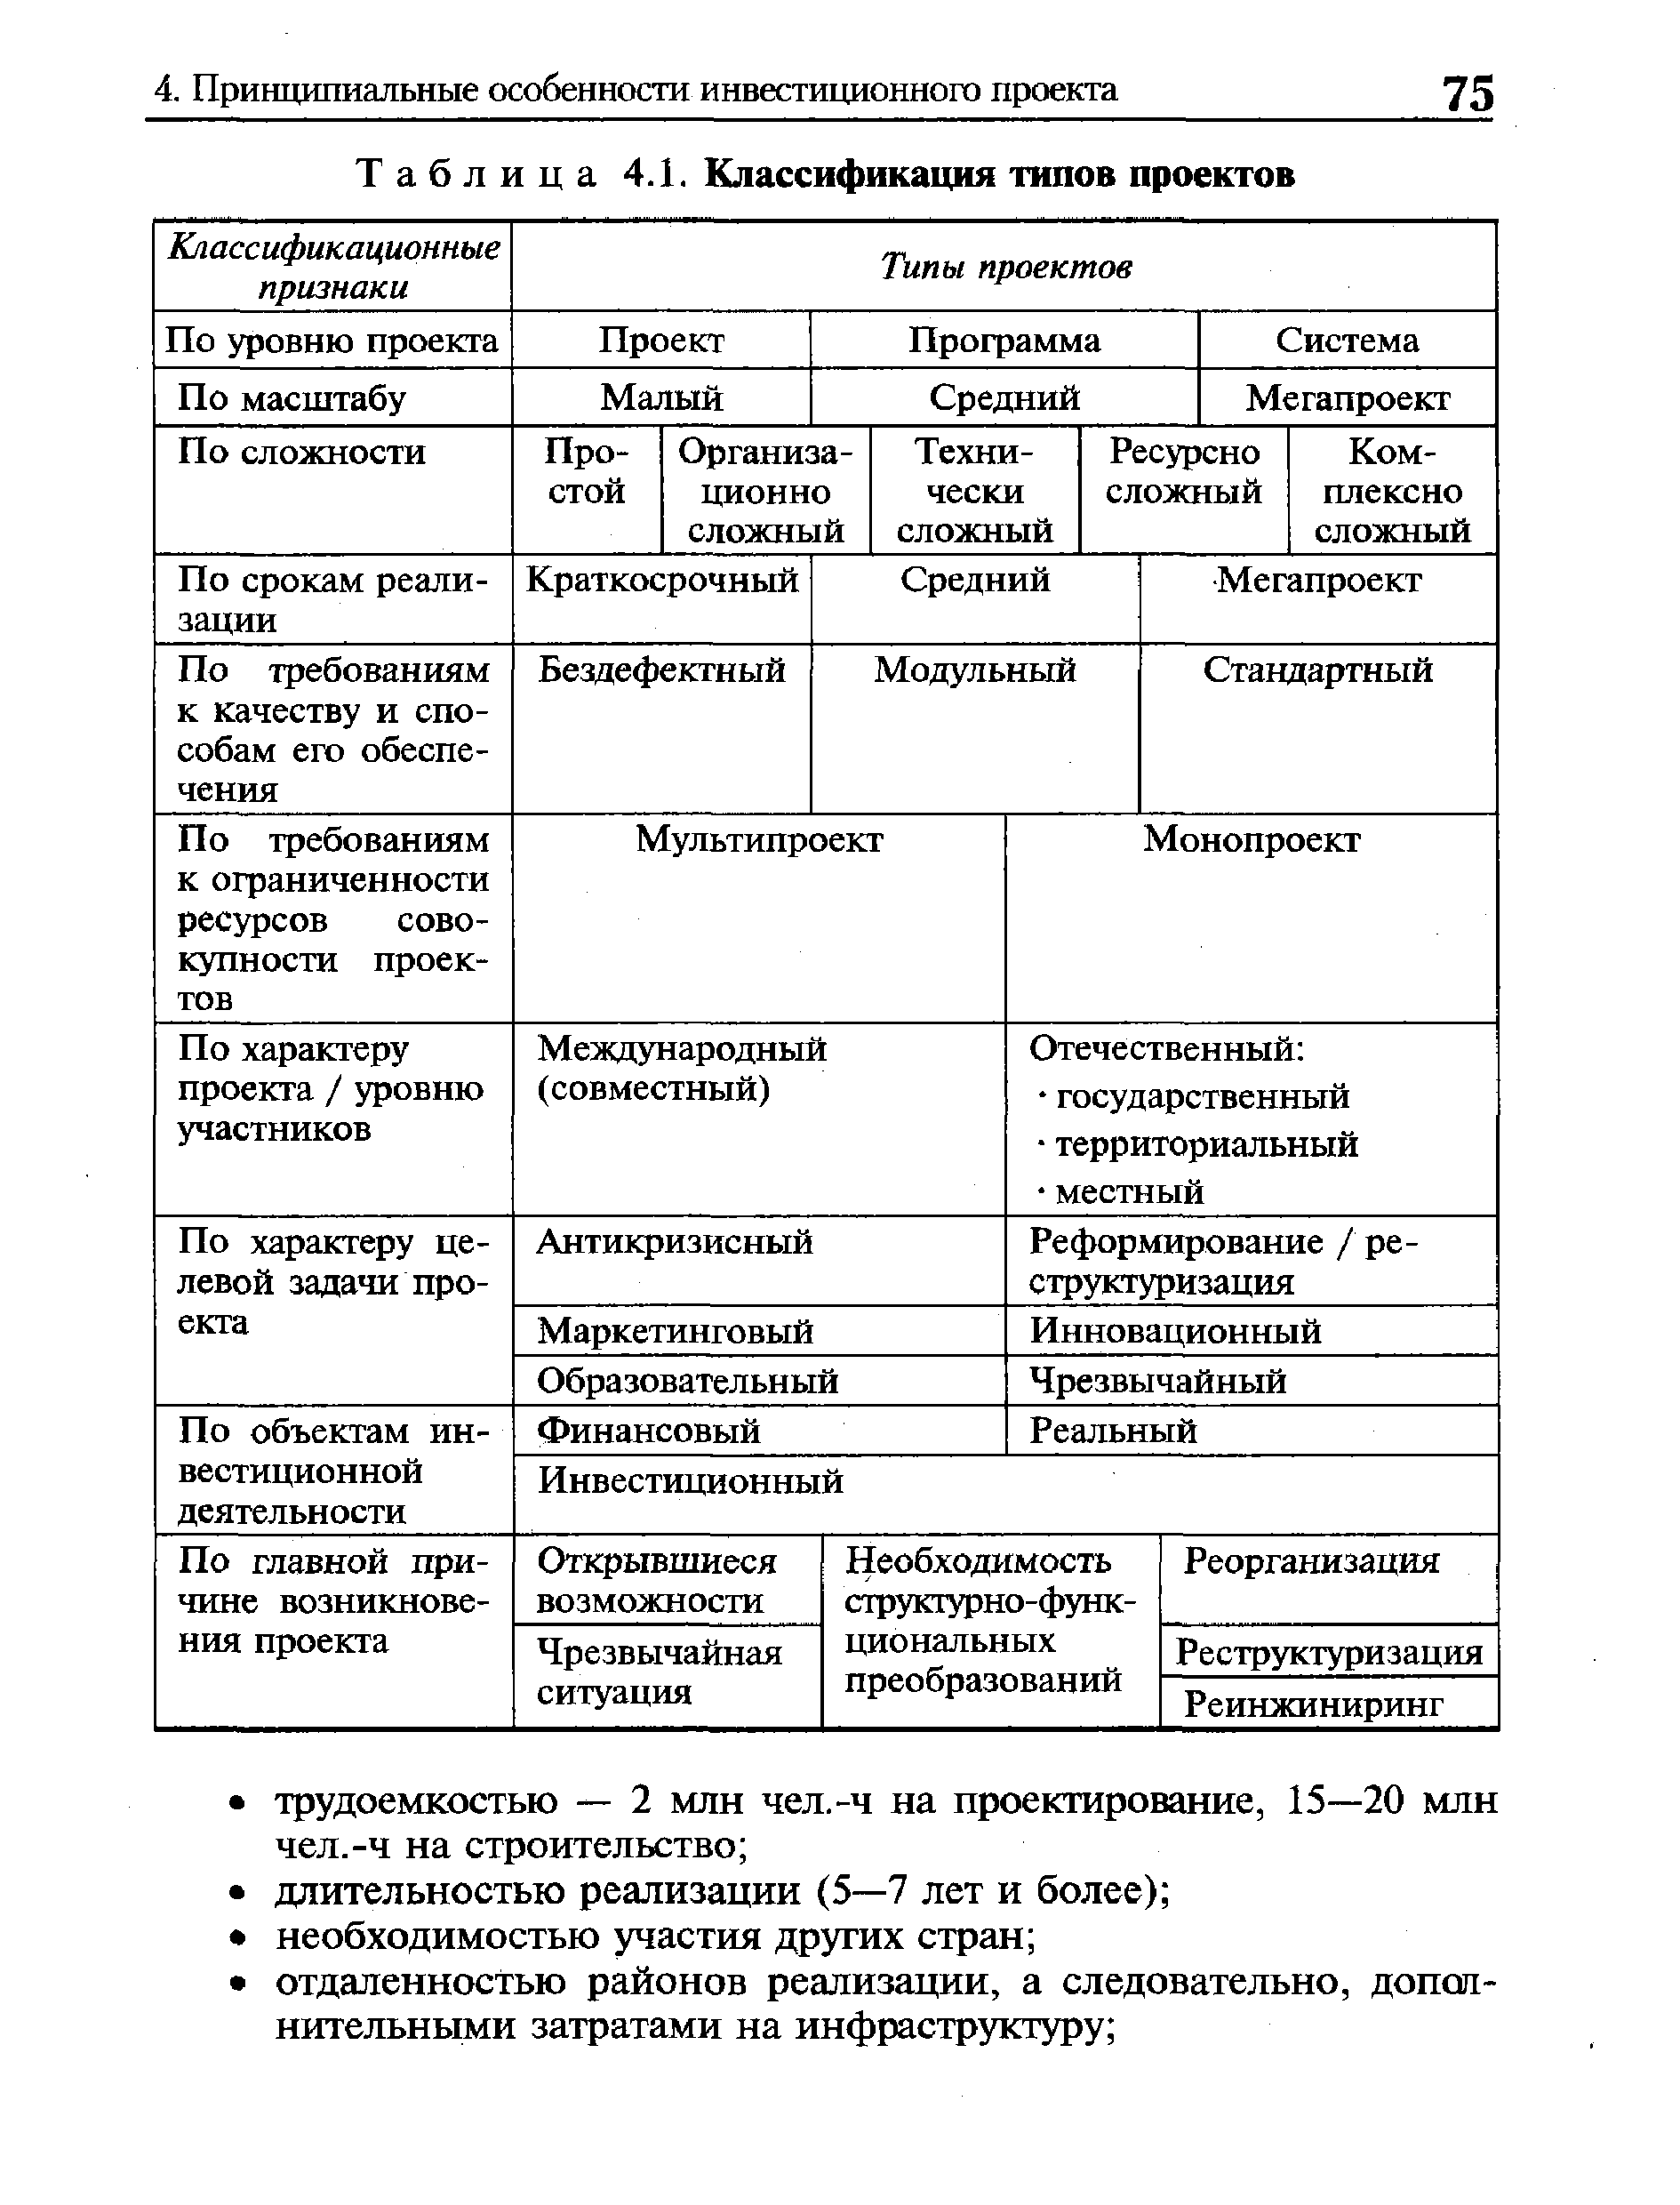 Таблица 4.1. Классификация типов проектов
